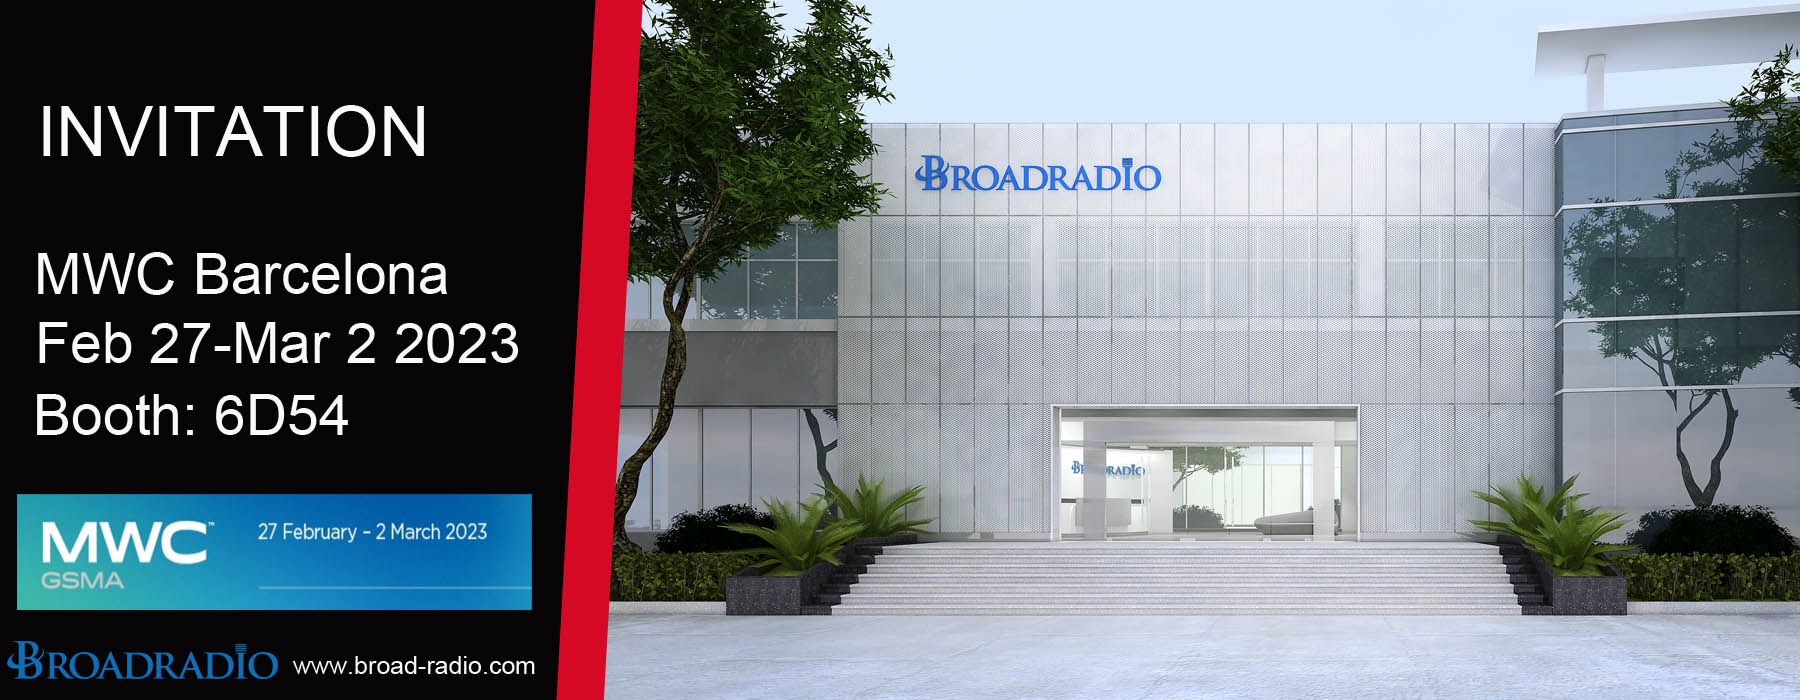 Broadradio neemt deel aan MWC Barcelona in februari 2023